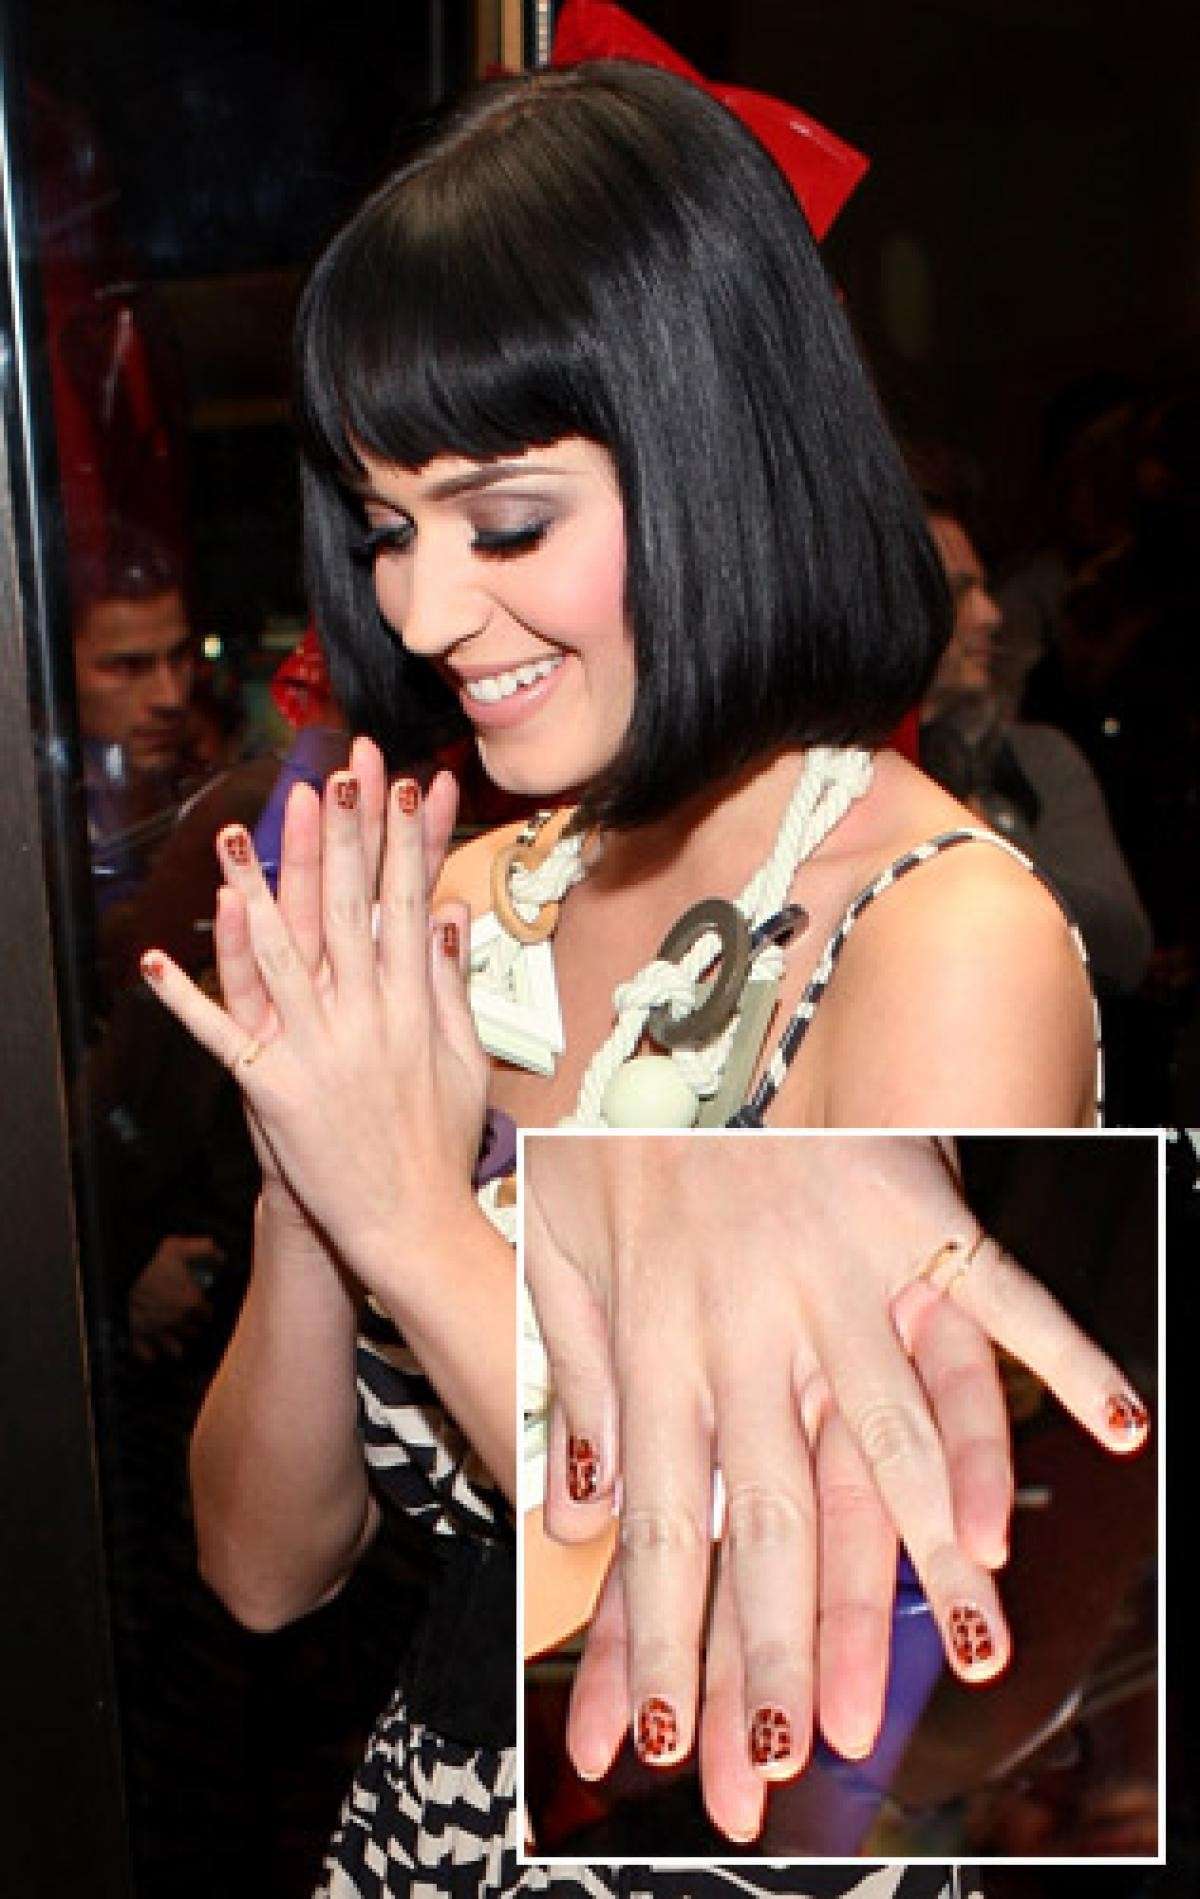 La nail art particolare di Katy Perry